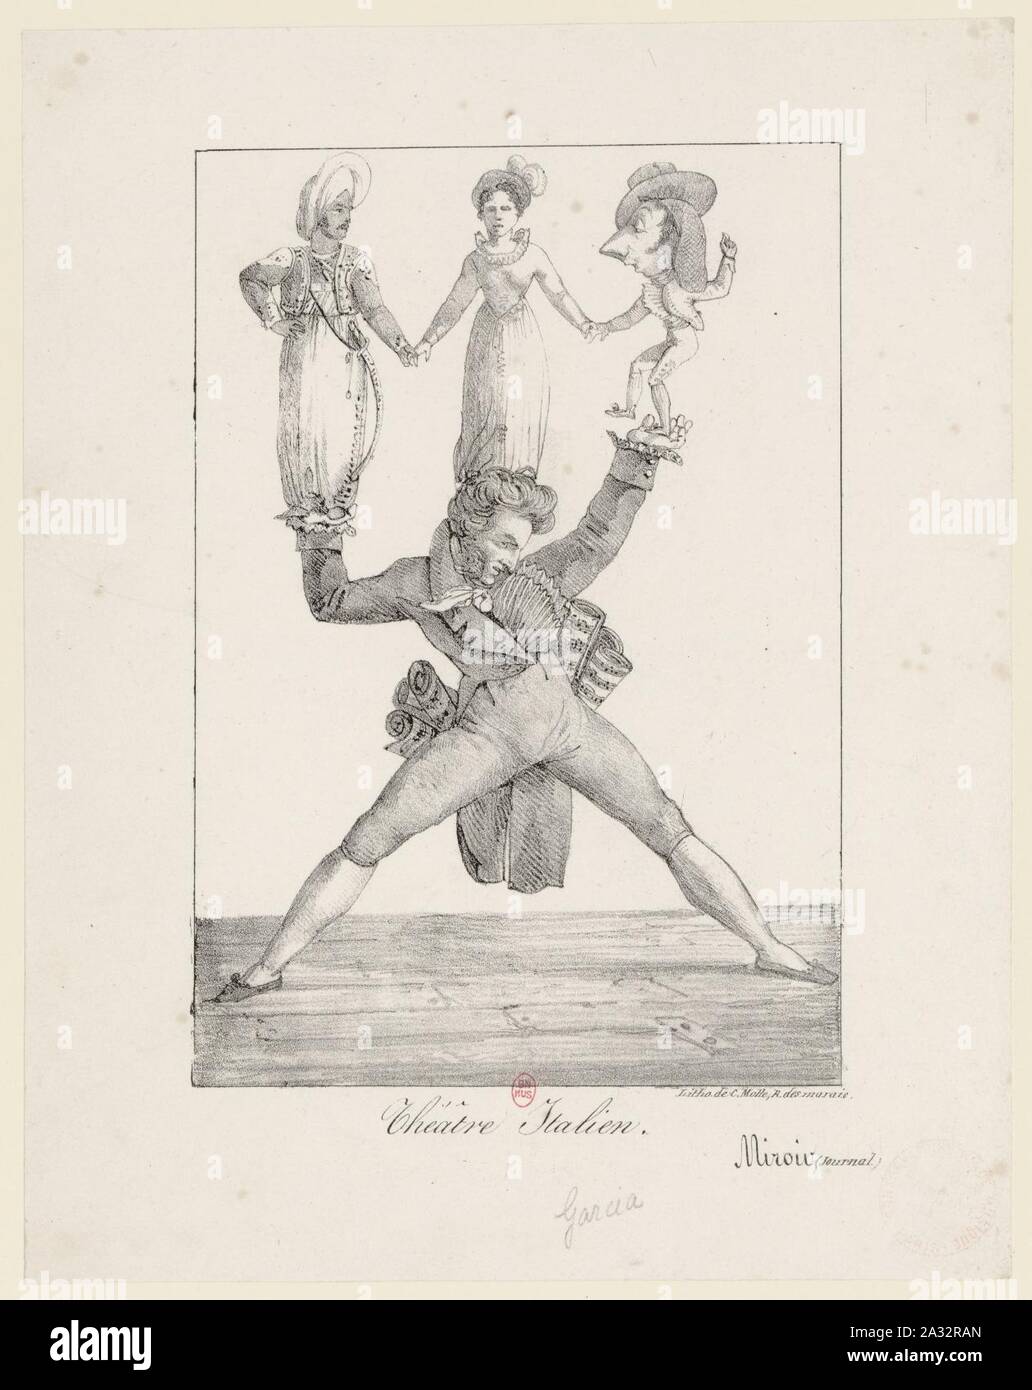 Eugène Delacroix - Rossini soutenant Manuel Garcia dans Otello, Mme Mainvielle-Fodor dans Rosine et Pellegrini dans le Barbier de Séville - Original. Stock Photo